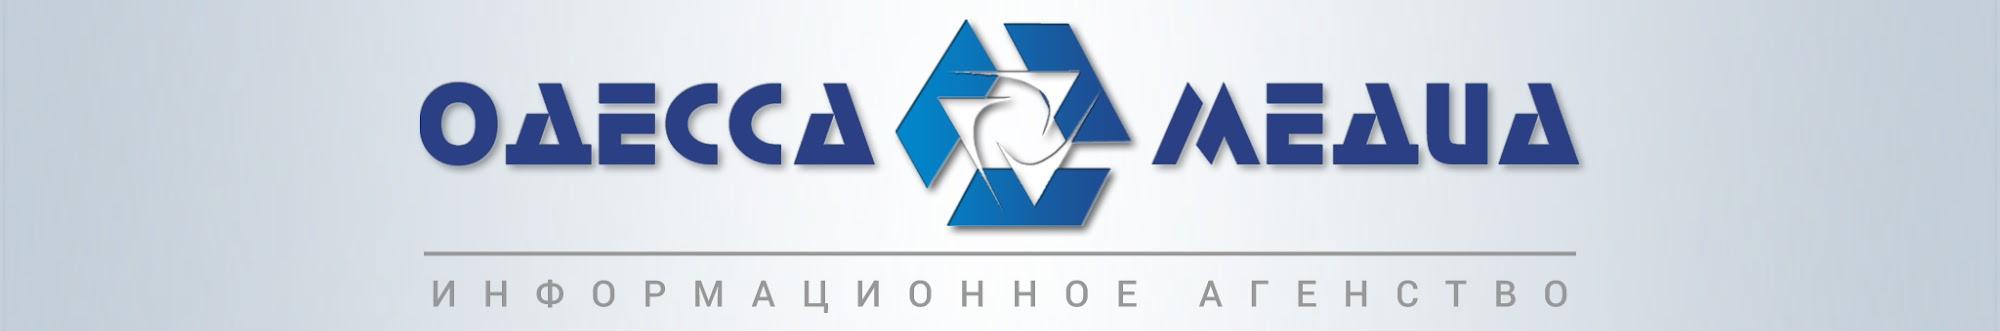 Информационное агентство «Одесса - медиа»